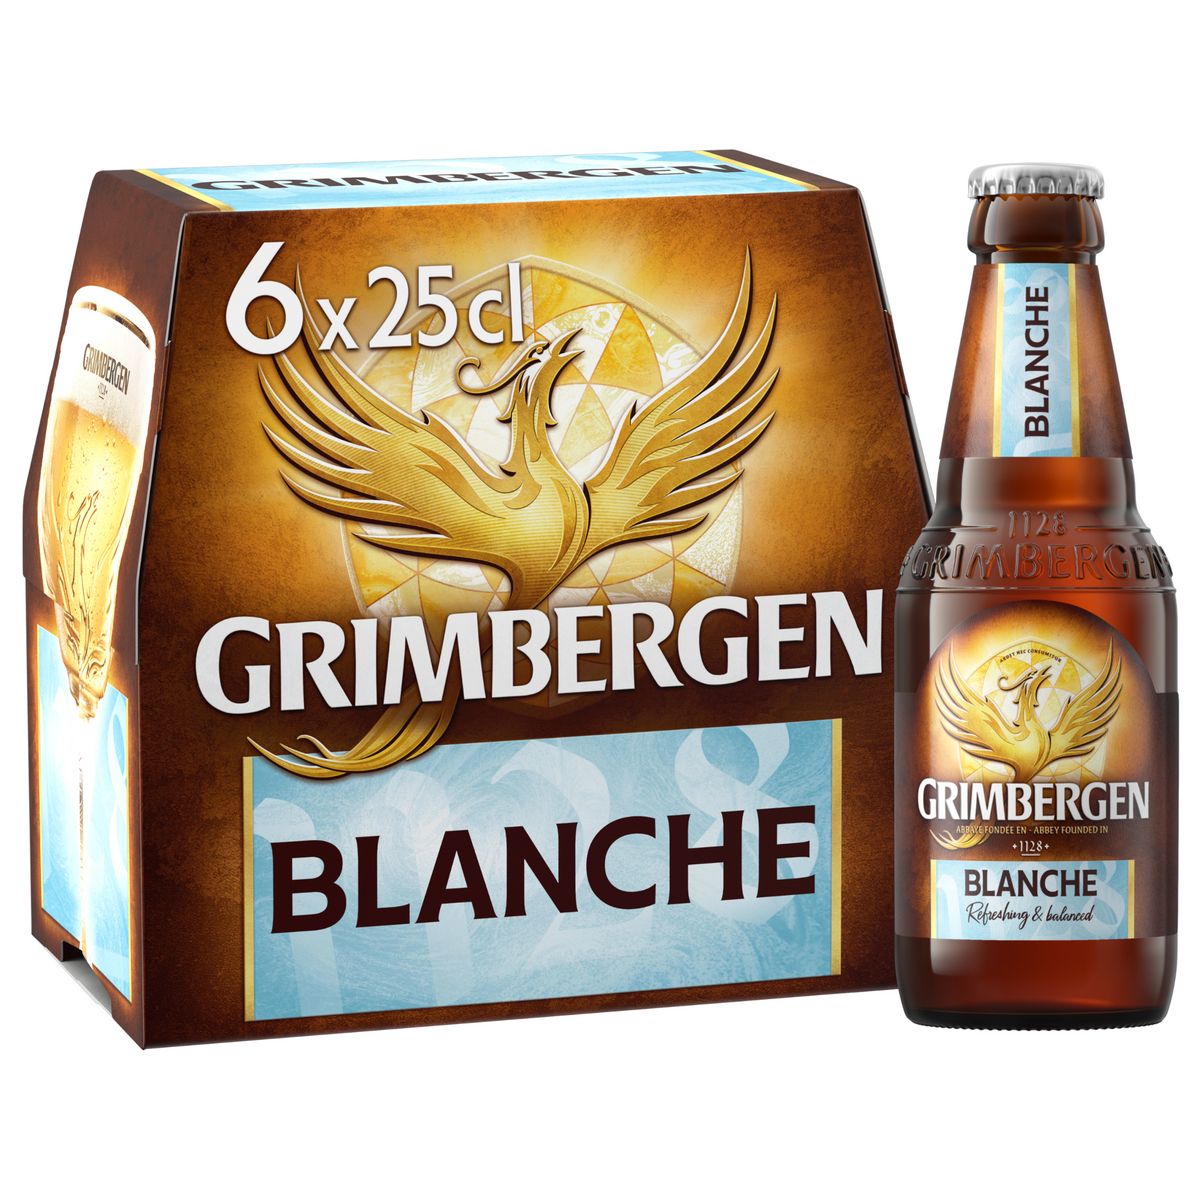 GRIMBERGEN Bière cuvée blanche 6% bouteilles 6x25cl